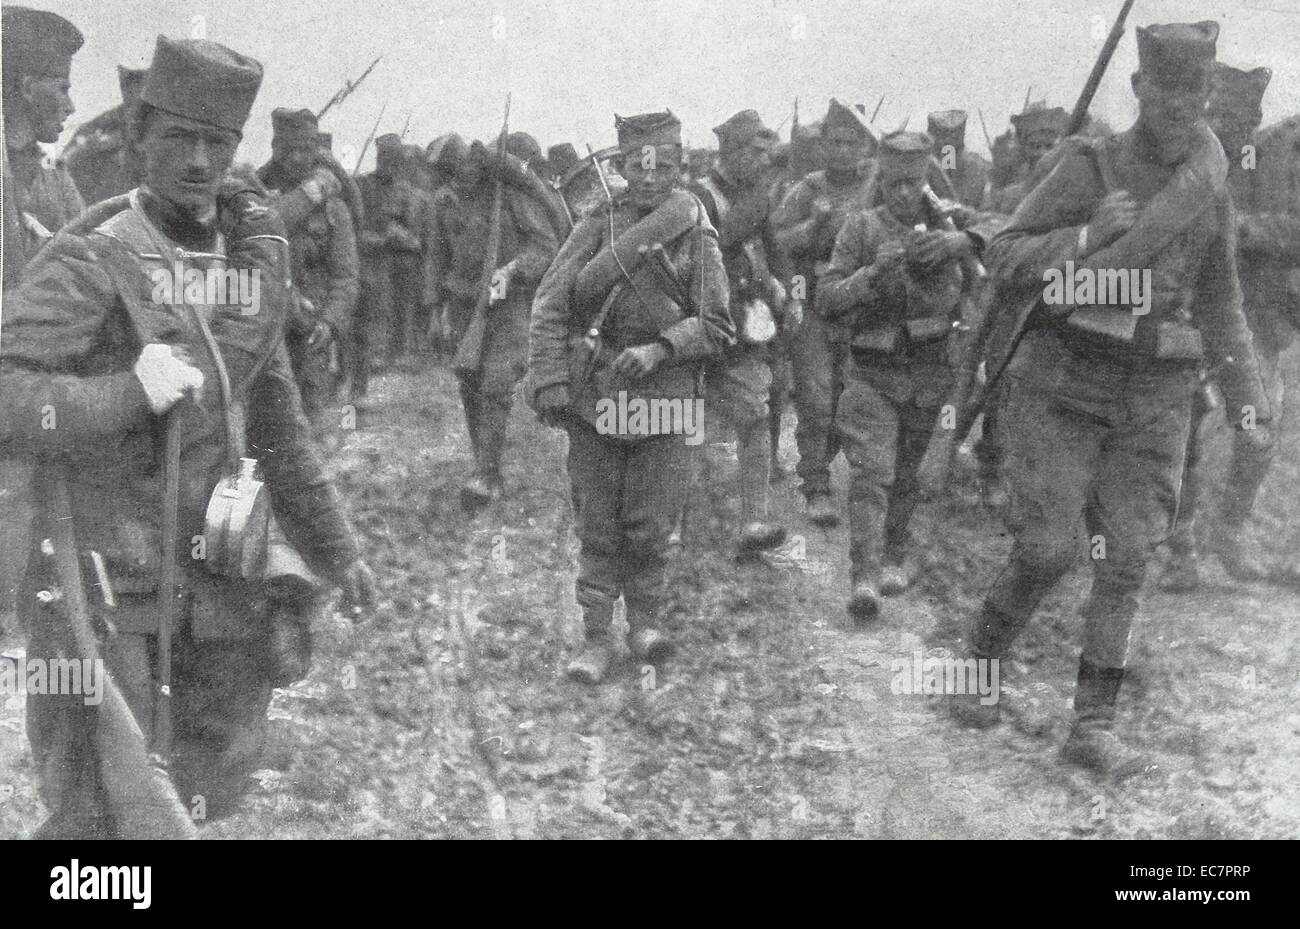 Les jeunes recrues envoyés combattre pour la Russie des premières semaines de la première guerre mondiale Banque D'Images